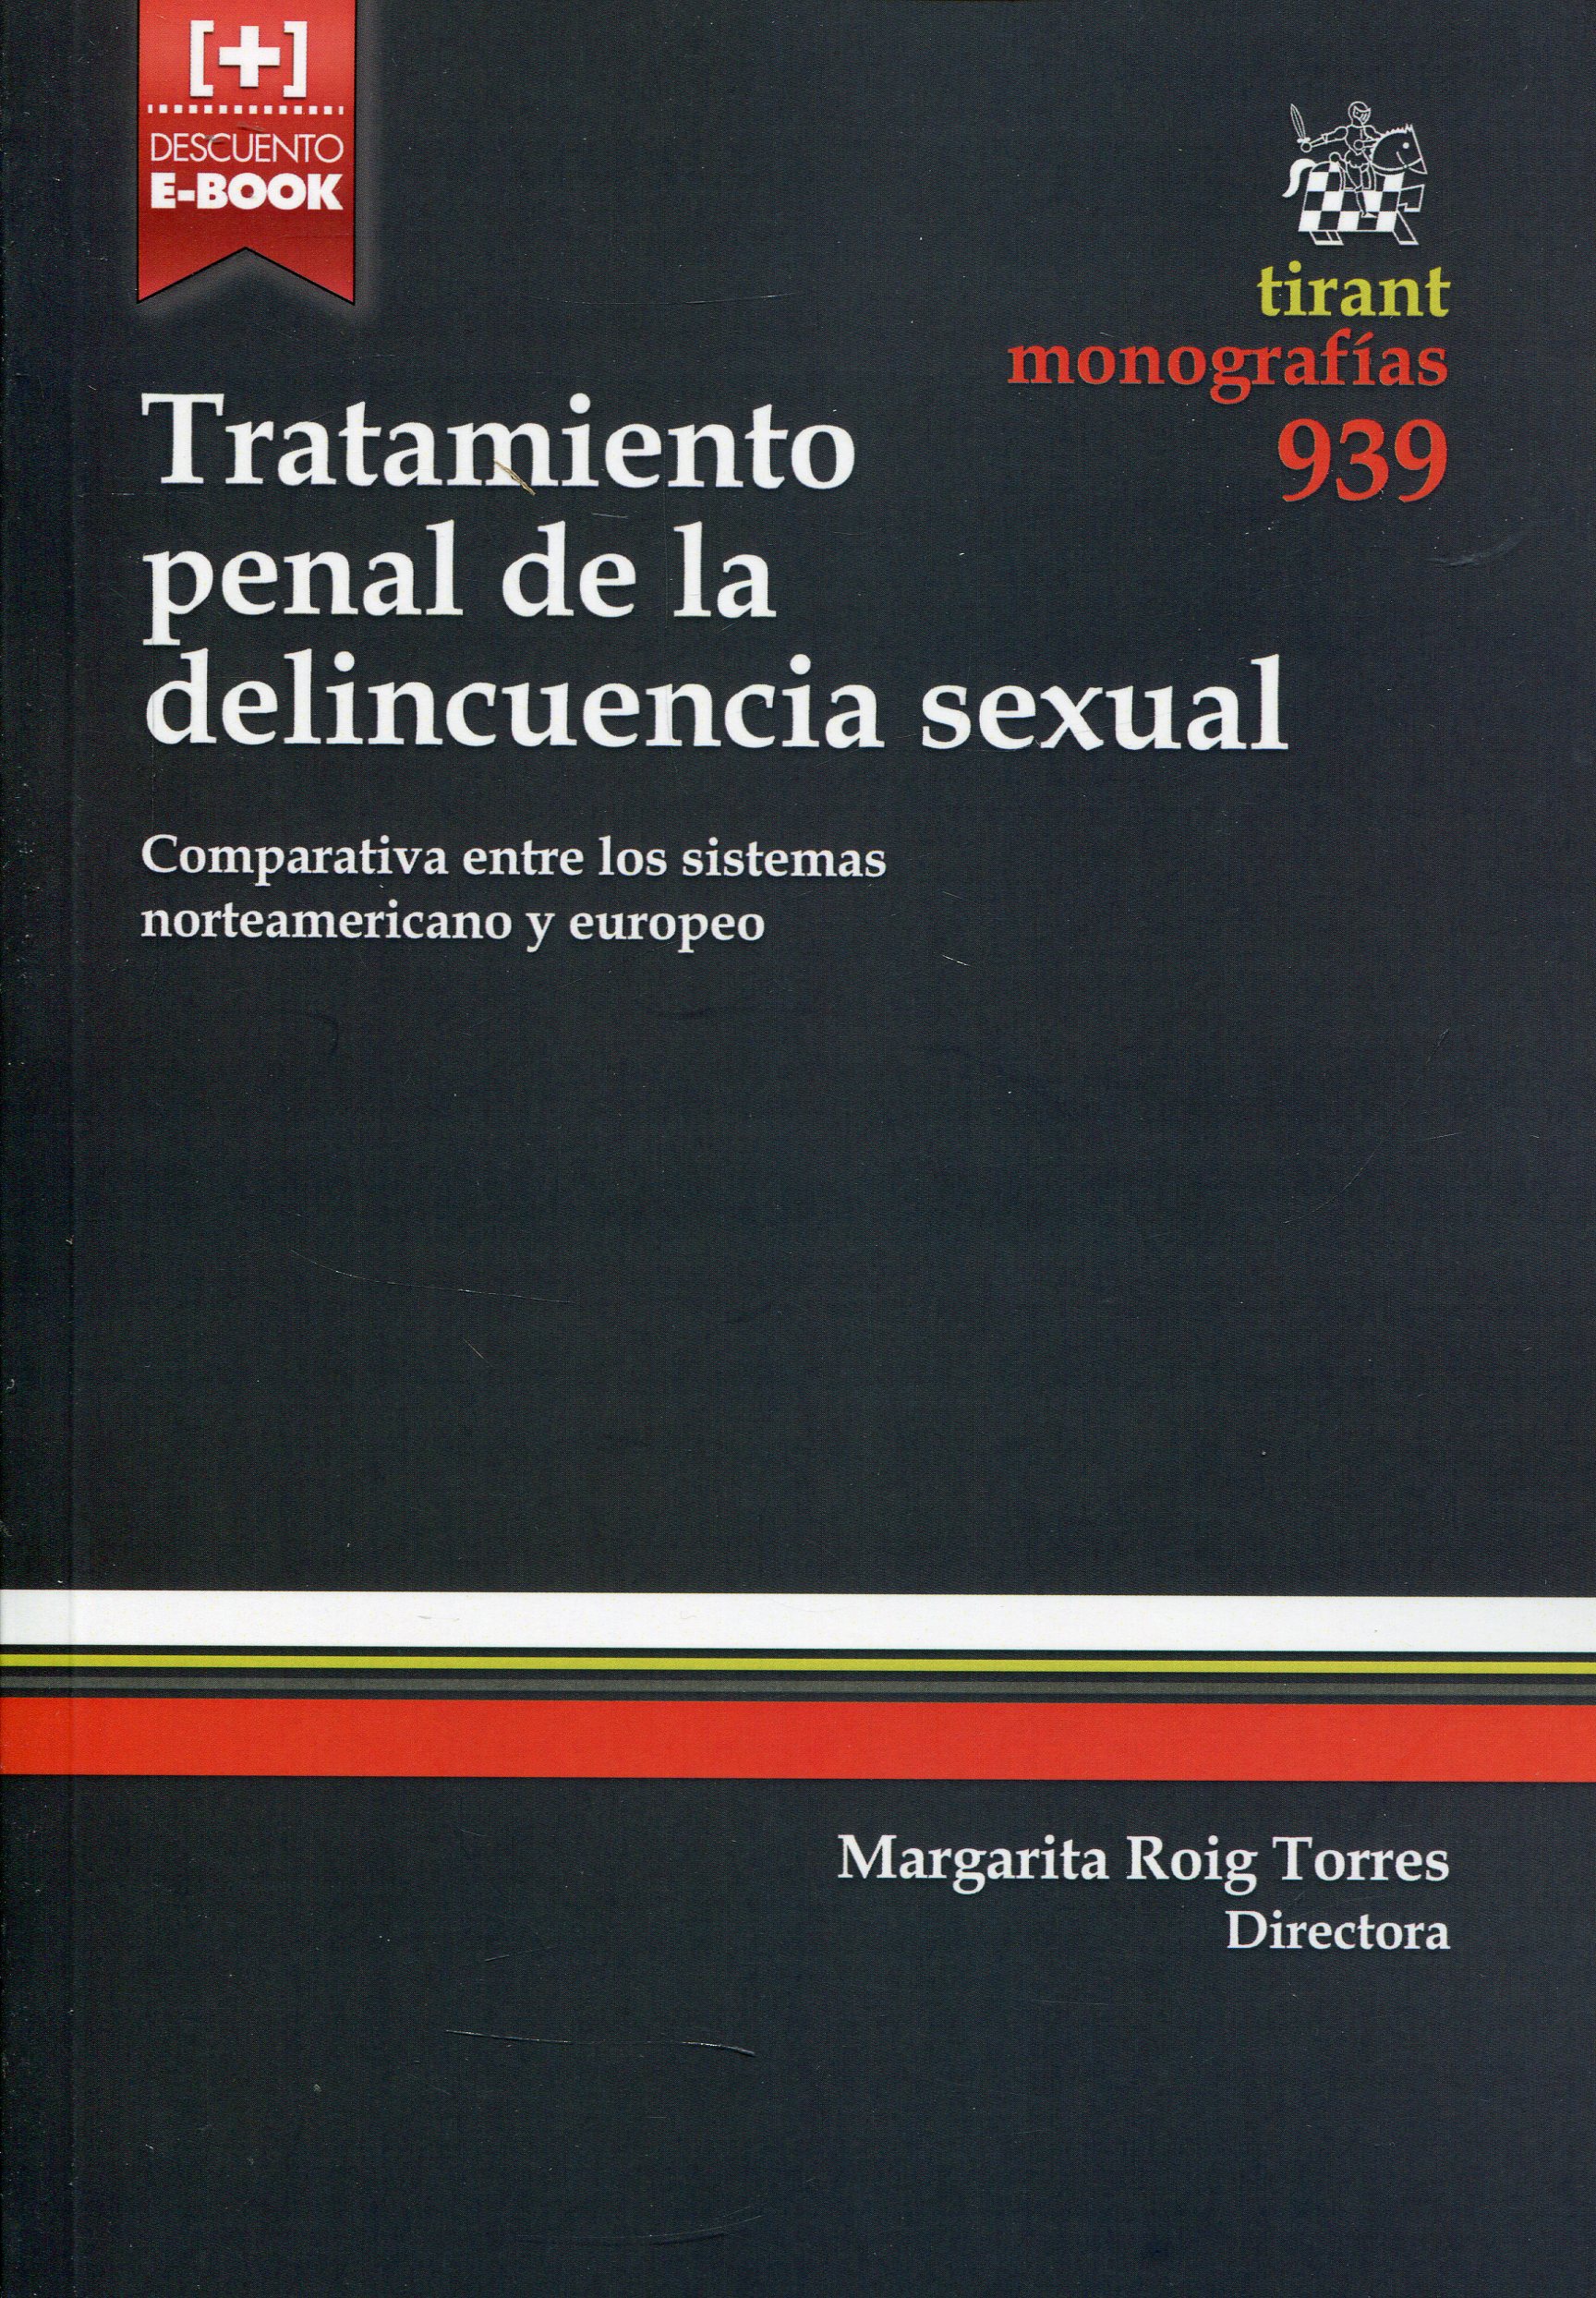 Imagen de portada del libro Tratamiento penal de la delincuencia sexual